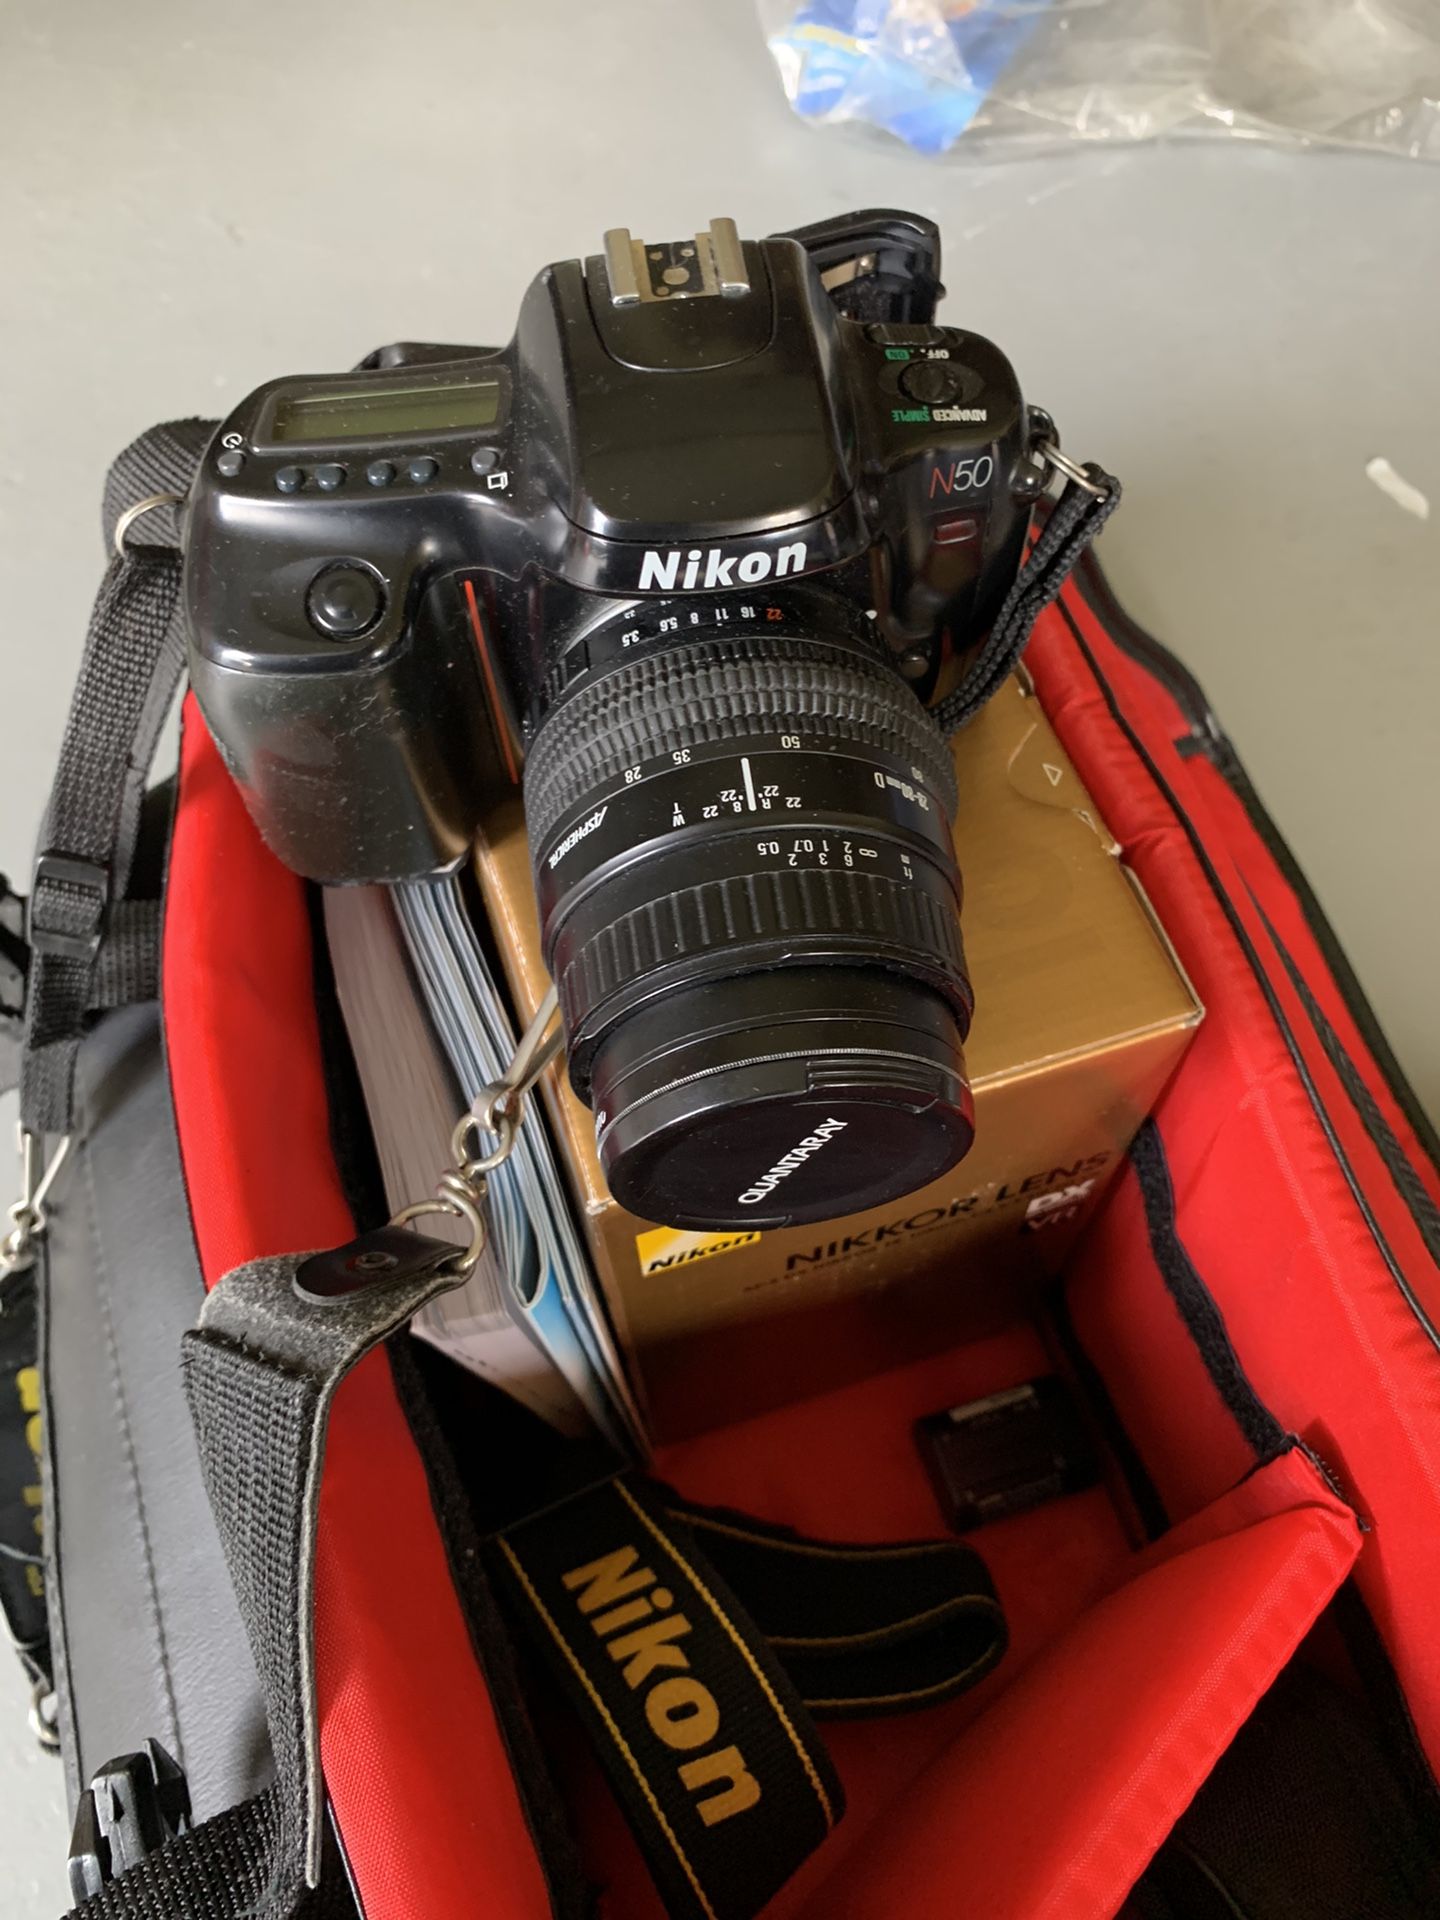 Nikon camera, bag and extra lens